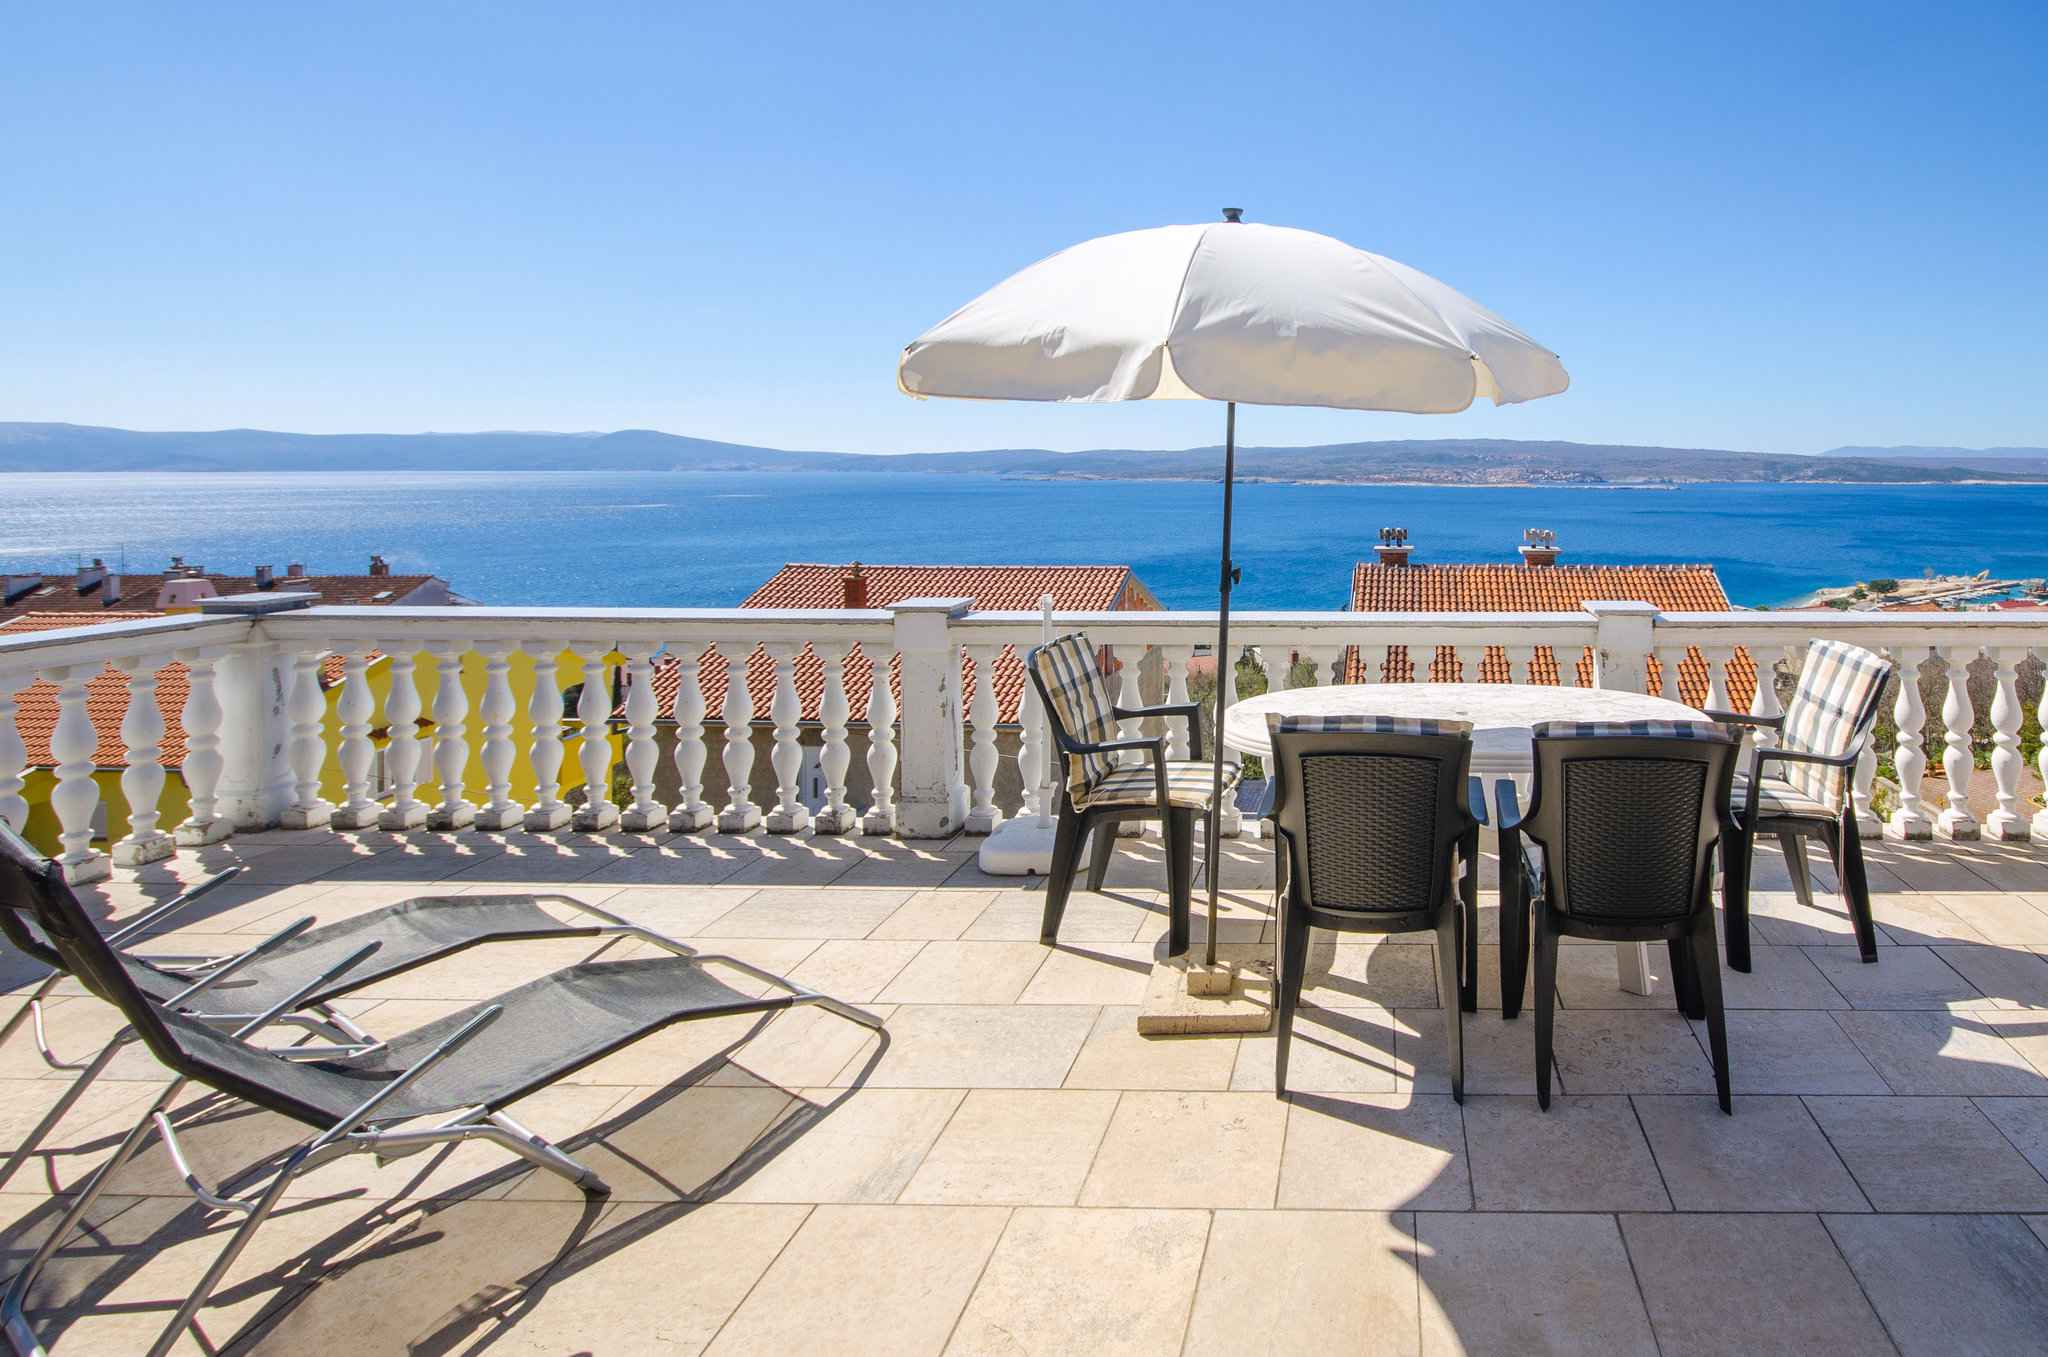 Ferienwohnung mit einer großen Terrasse mit   in Kroatien